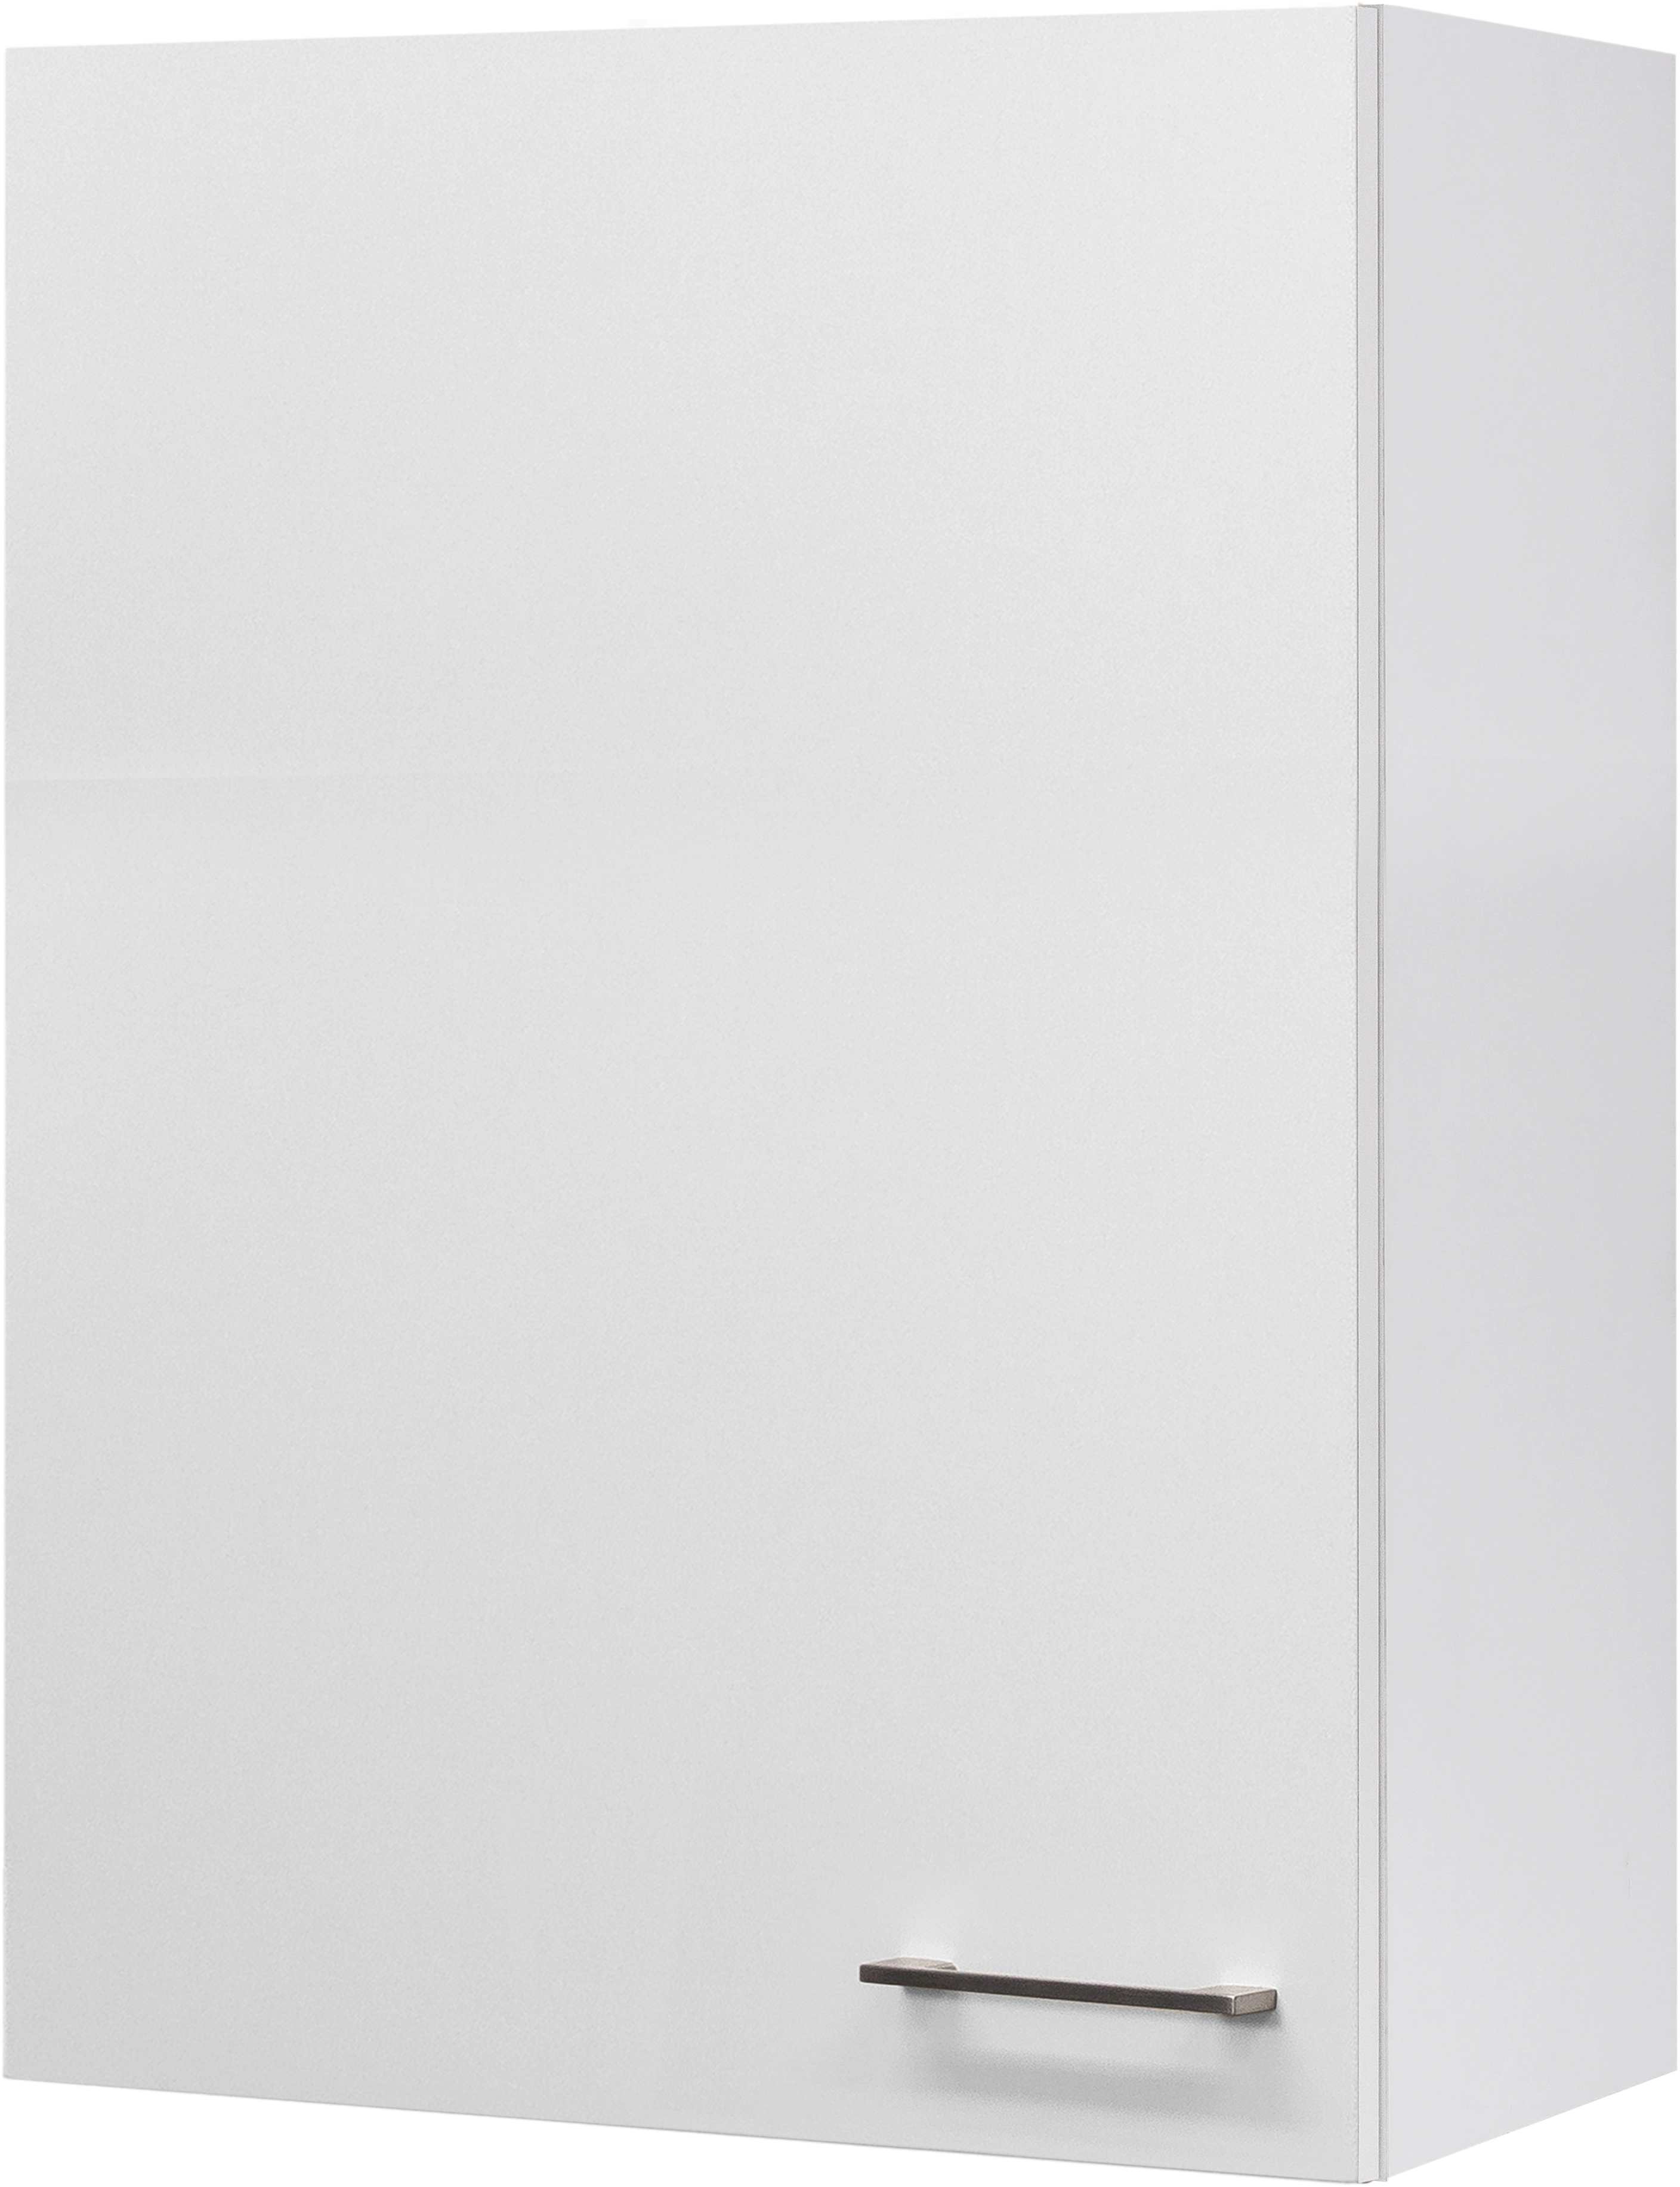 Flex-Well Exclusiv Hängeschrank groß Joelina 60 x 89 cm Weiß kaufen bei OBI